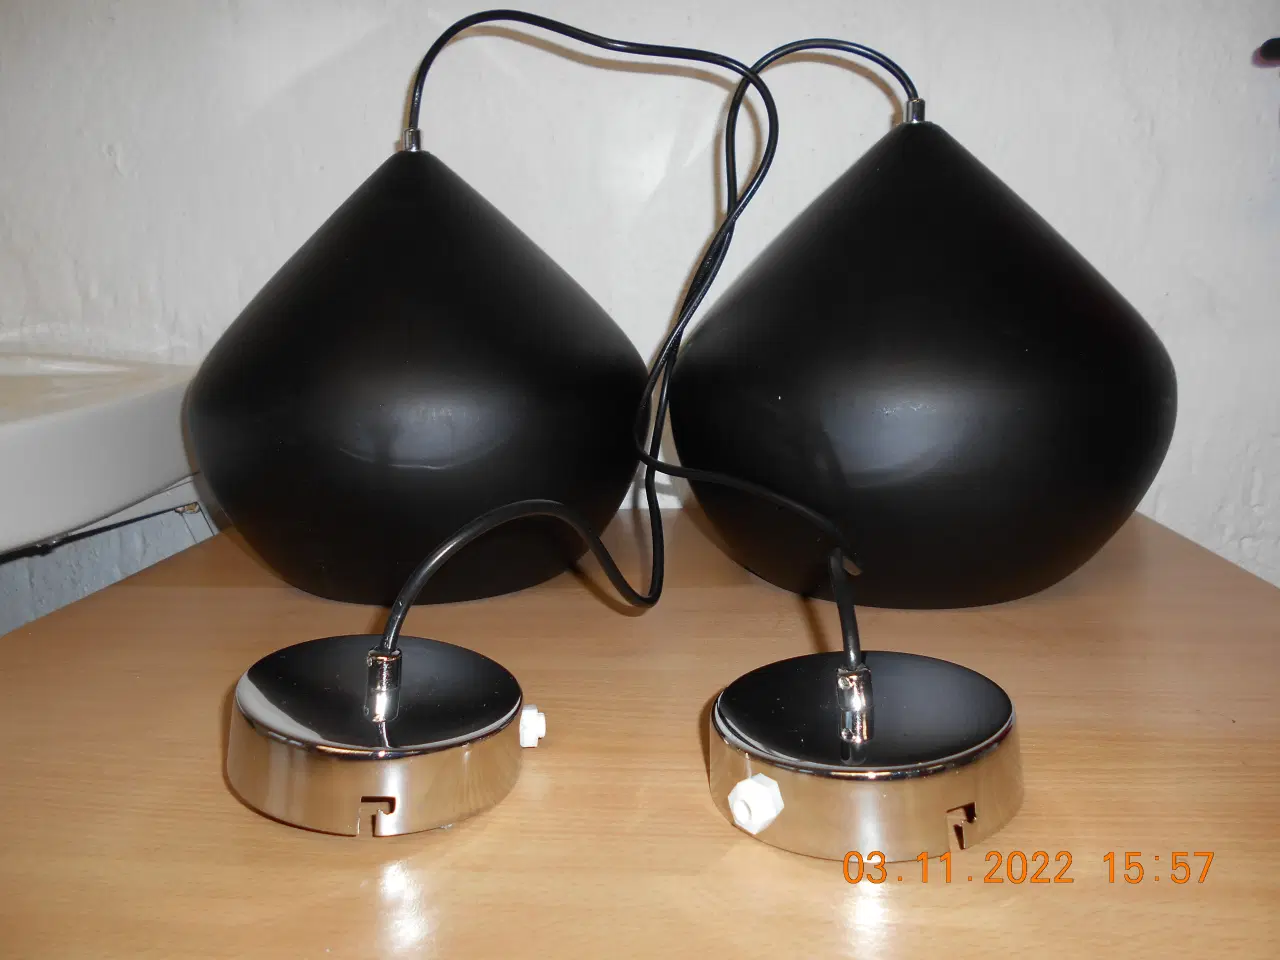 Billede 1 - 2 sorte keramik lamper